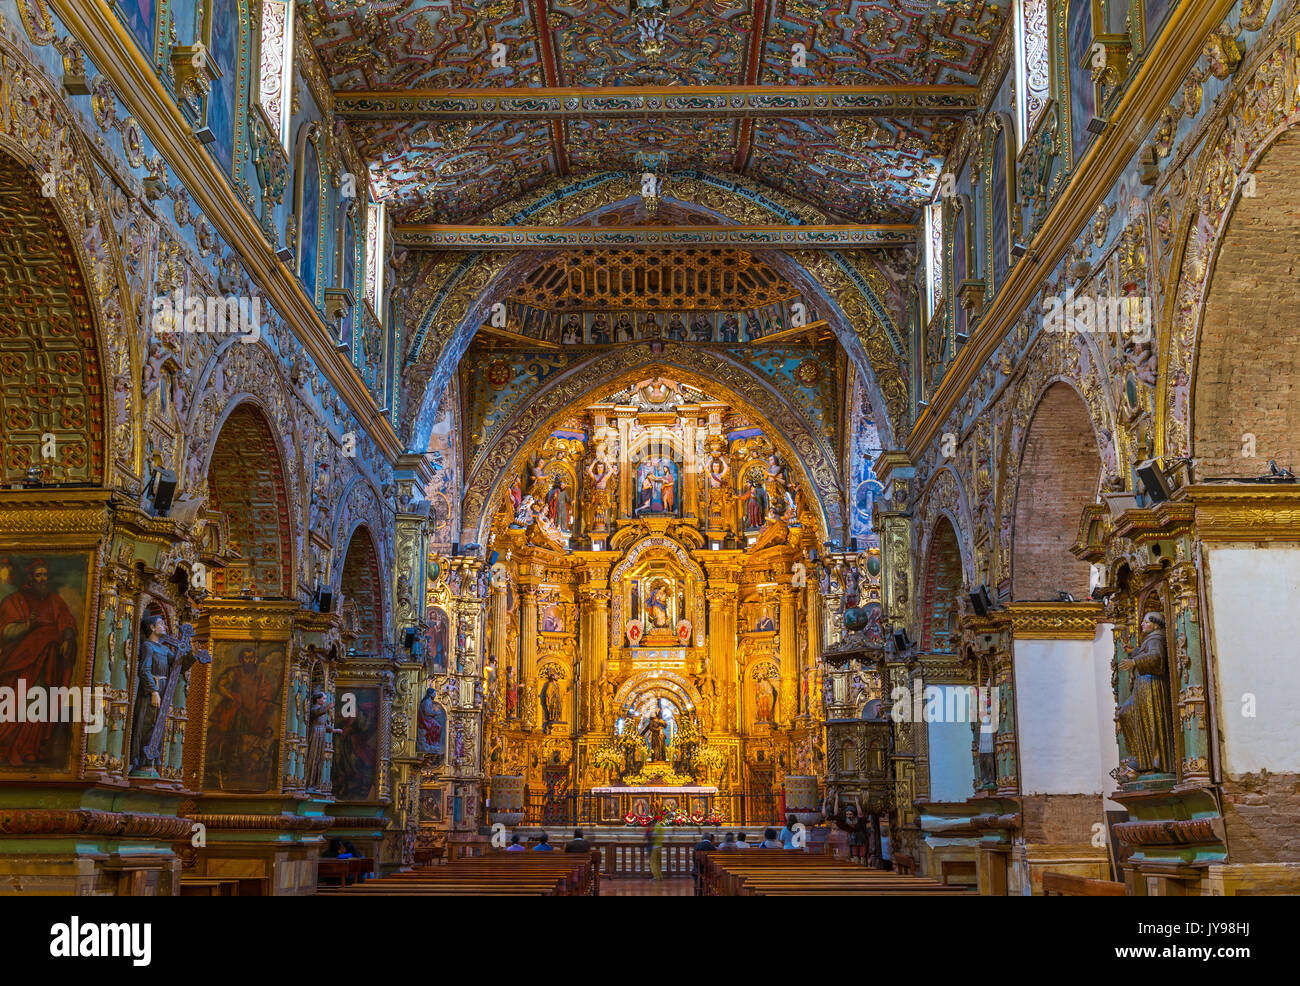 Le style baroque et décoré à la feuille d'autel de l'église et le couvent Saint François, dans le centre-ville historique de Quito, Equateur. Banque D'Images